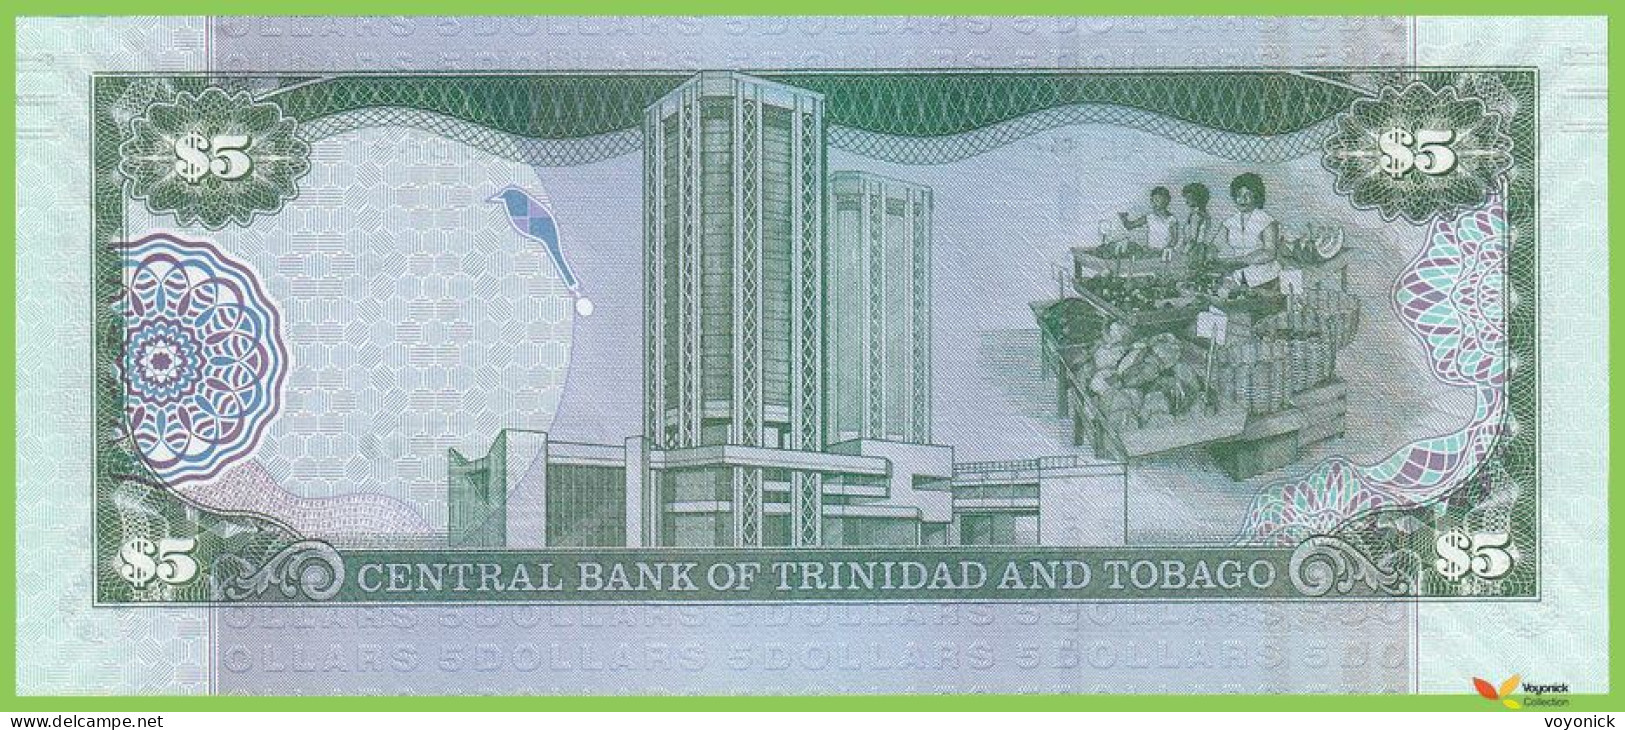 Voyo TRINIDAD & TOBAGO 5 Dollars 2006(2017) P47cr B229bz ZZ UNC Replacement - Trindad & Tobago